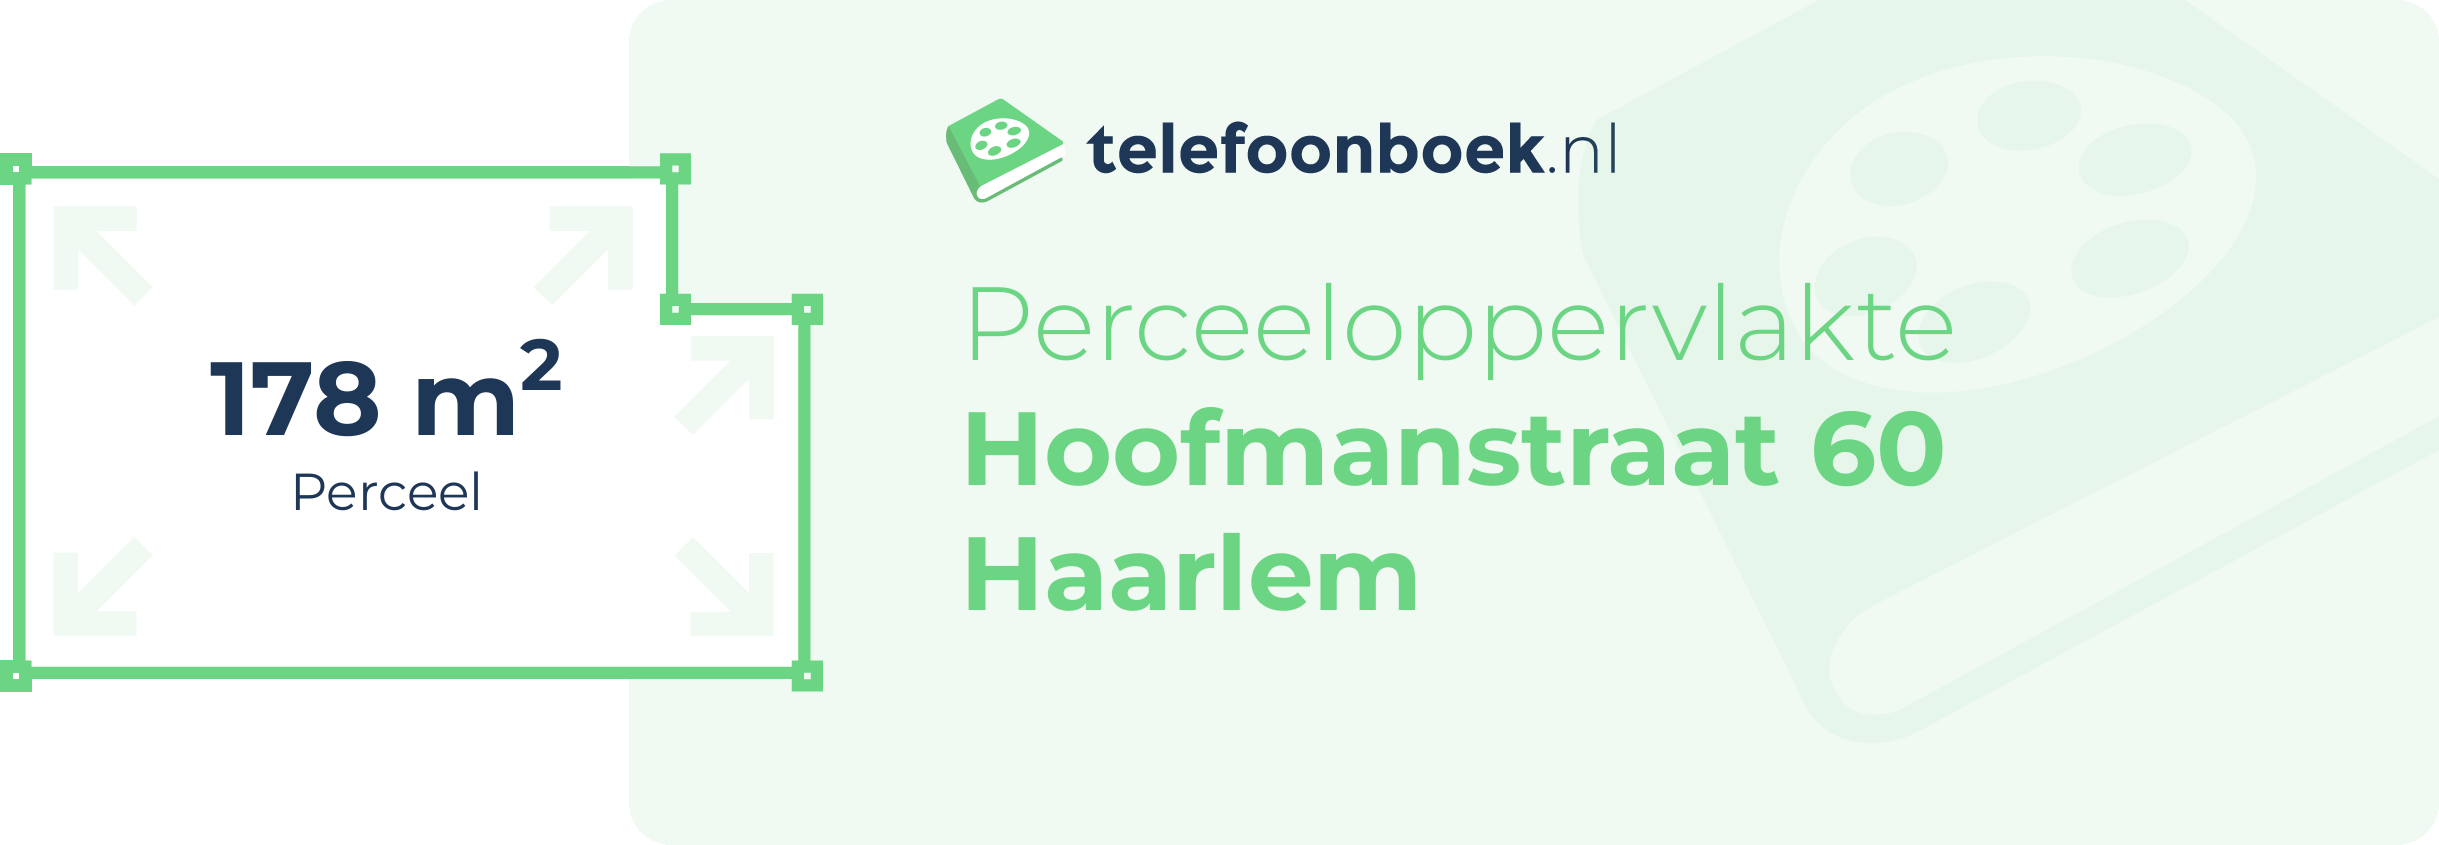 Perceeloppervlakte Hoofmanstraat 60 Haarlem